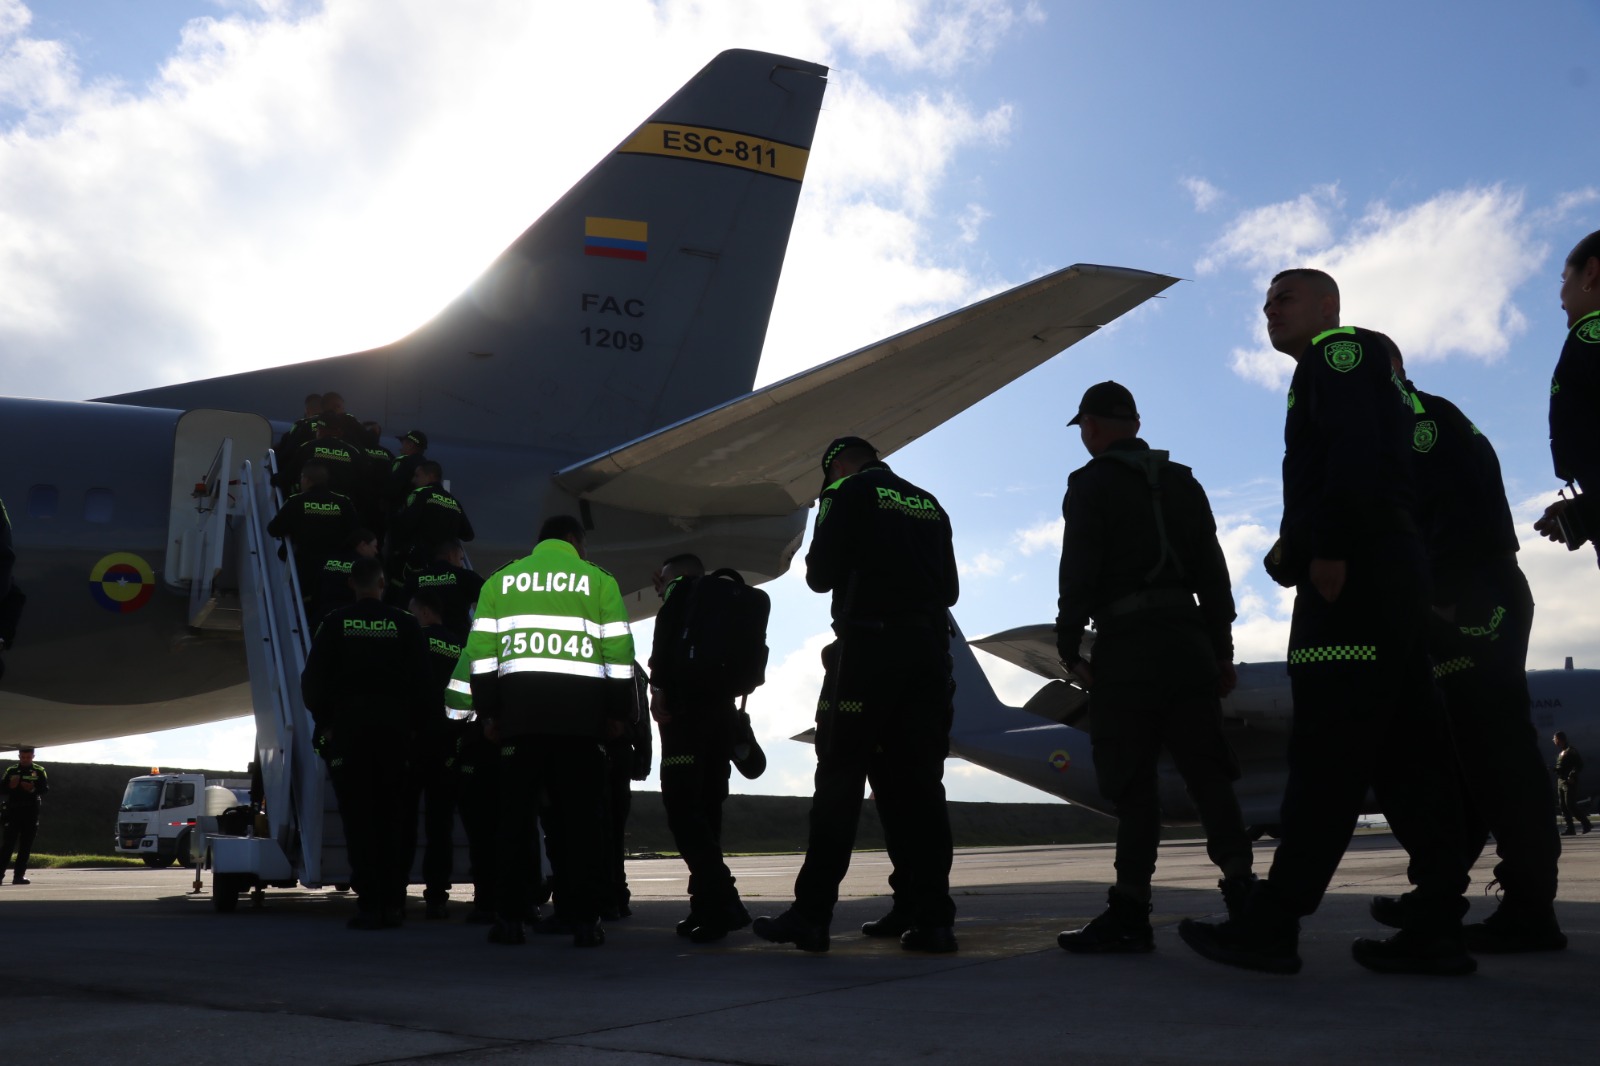 256 uniformados de la Policía Nacional transportados por la Fuerza Aérea hacia Valledupar, fortalecerán la seguridad del Festival Vallenato